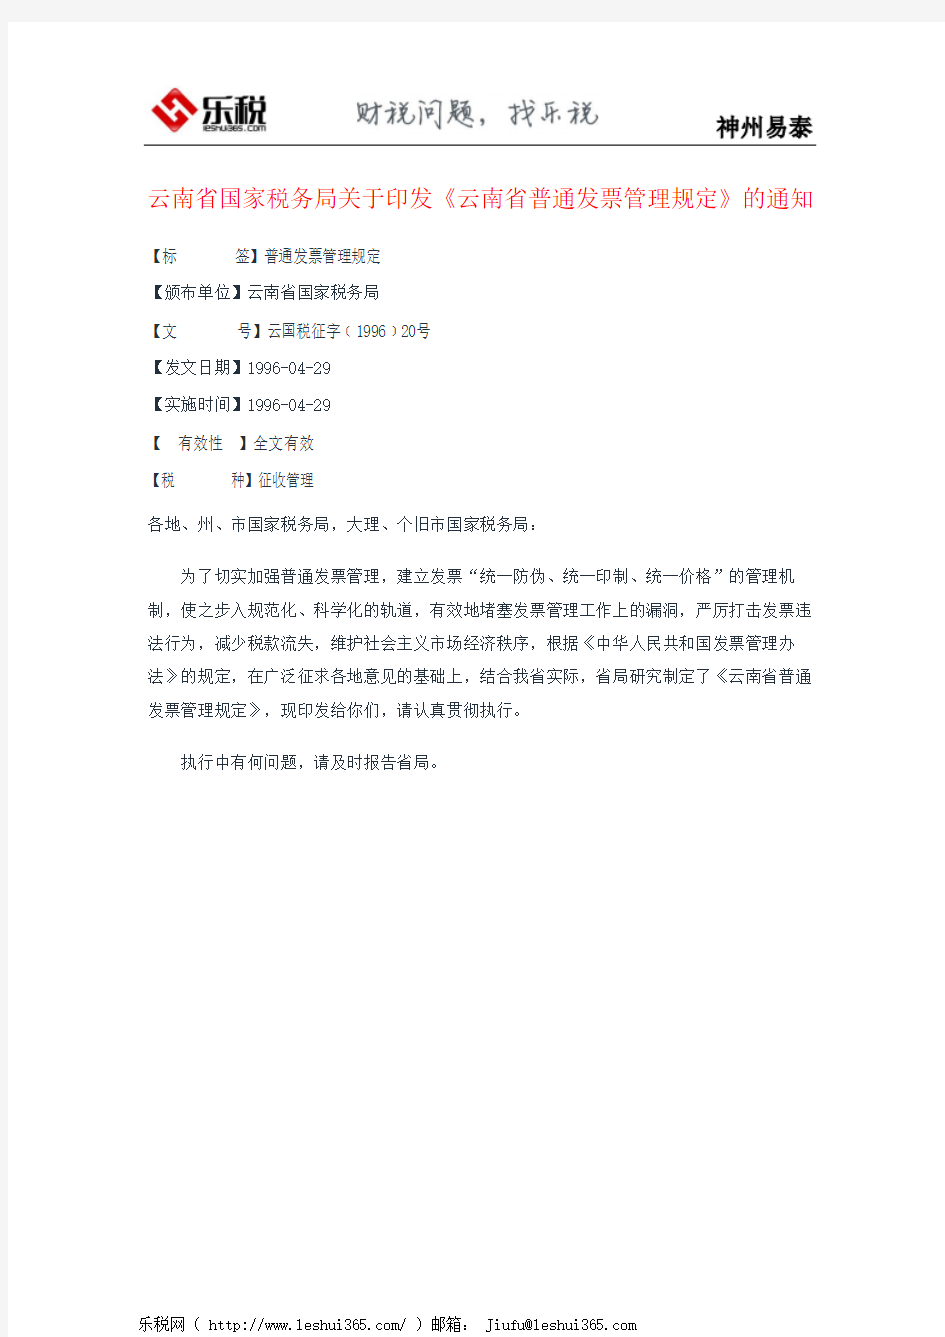 云南省国家税务局关于印发《云南省普通发票管理规定》的通知